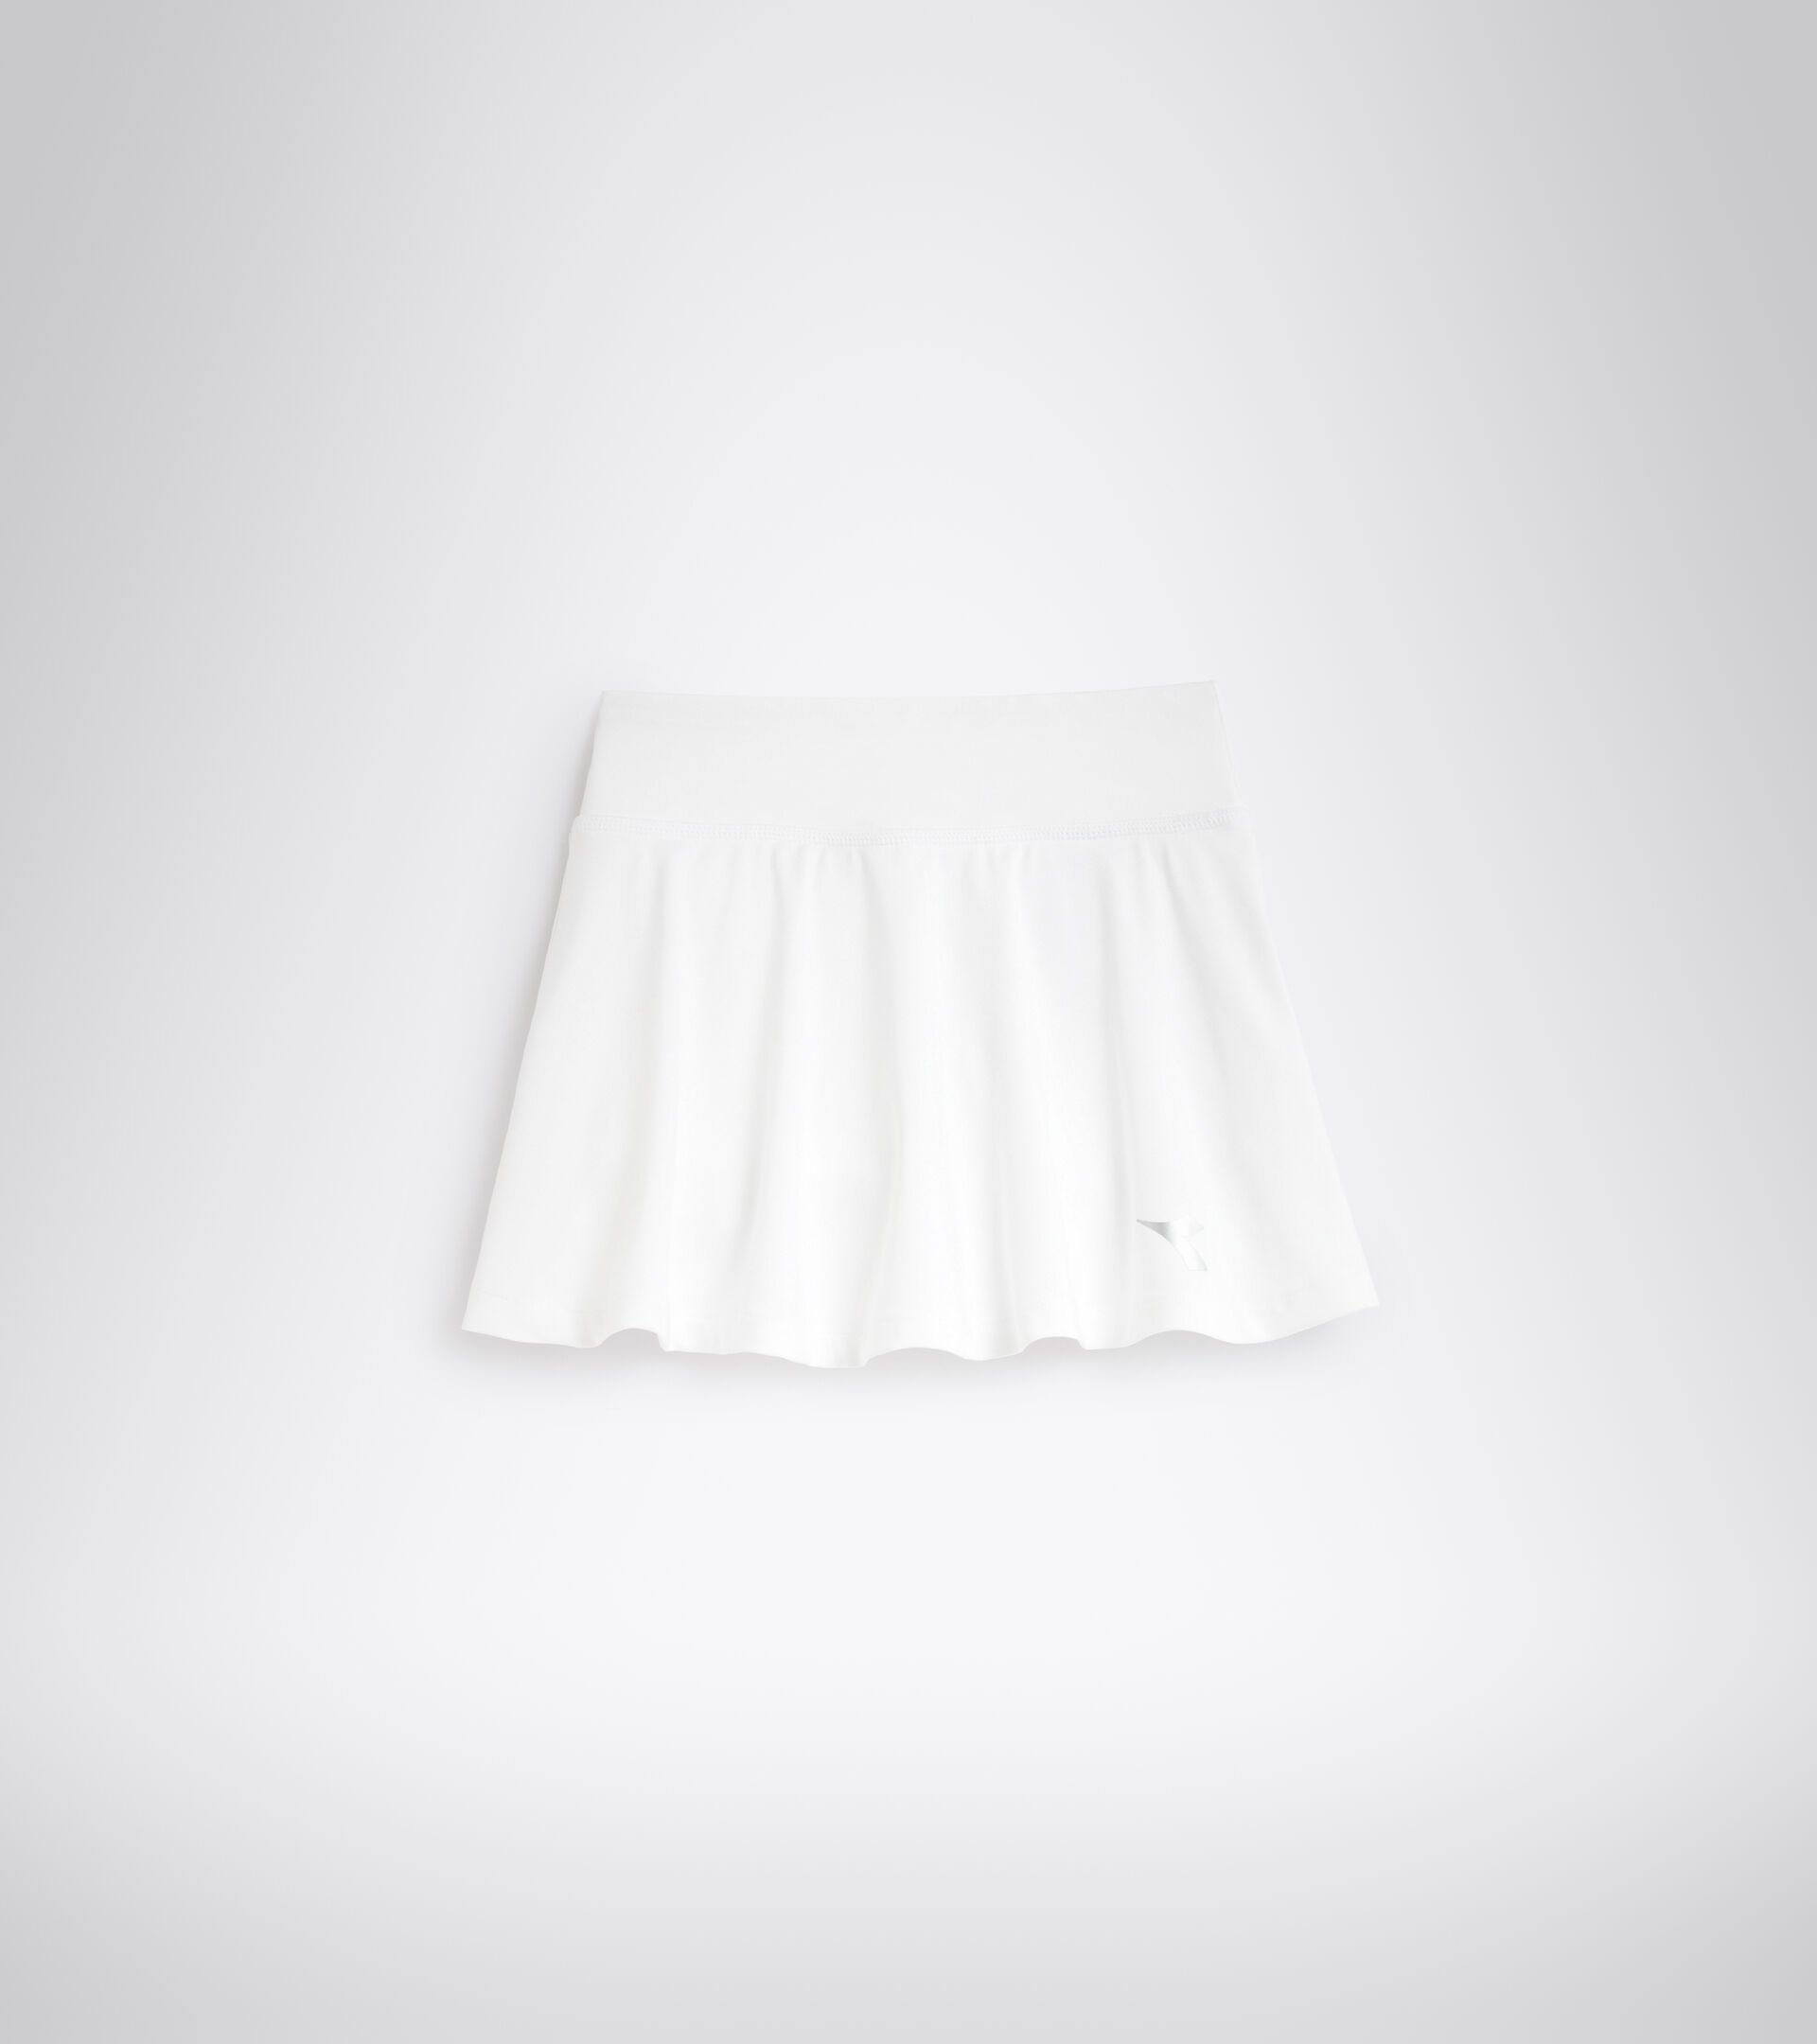 Tennis skirt - Junior G. SKIRT COURT OPTICAL WHITE - Diadora